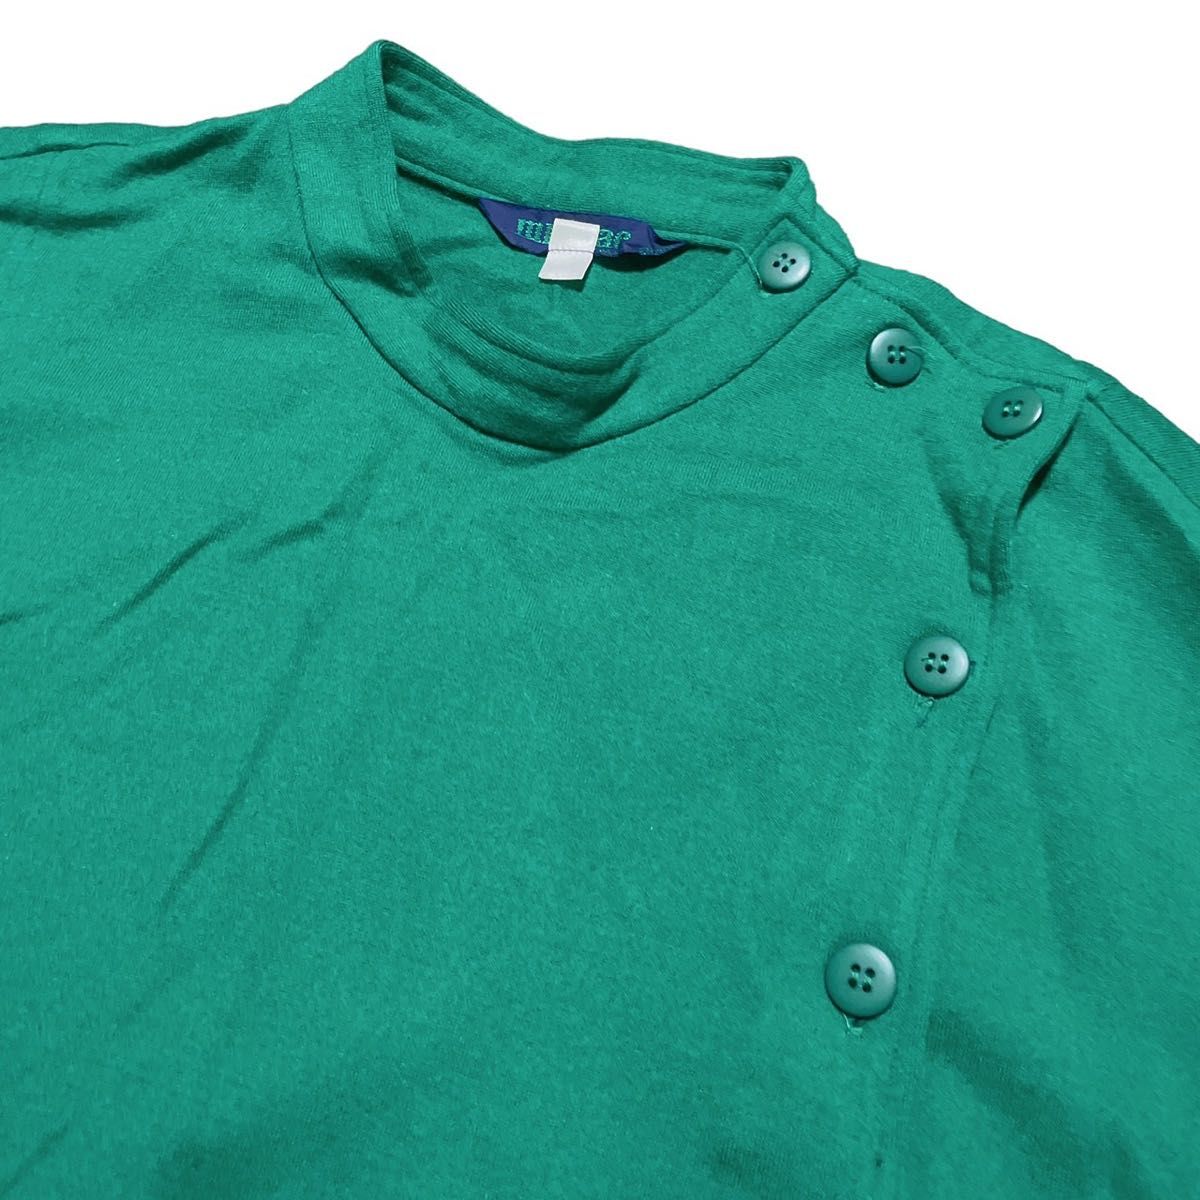 ※出品数確保の為、期間限定出品※ micmac セーター トレーナー カットソー 緑 グリーン 長袖